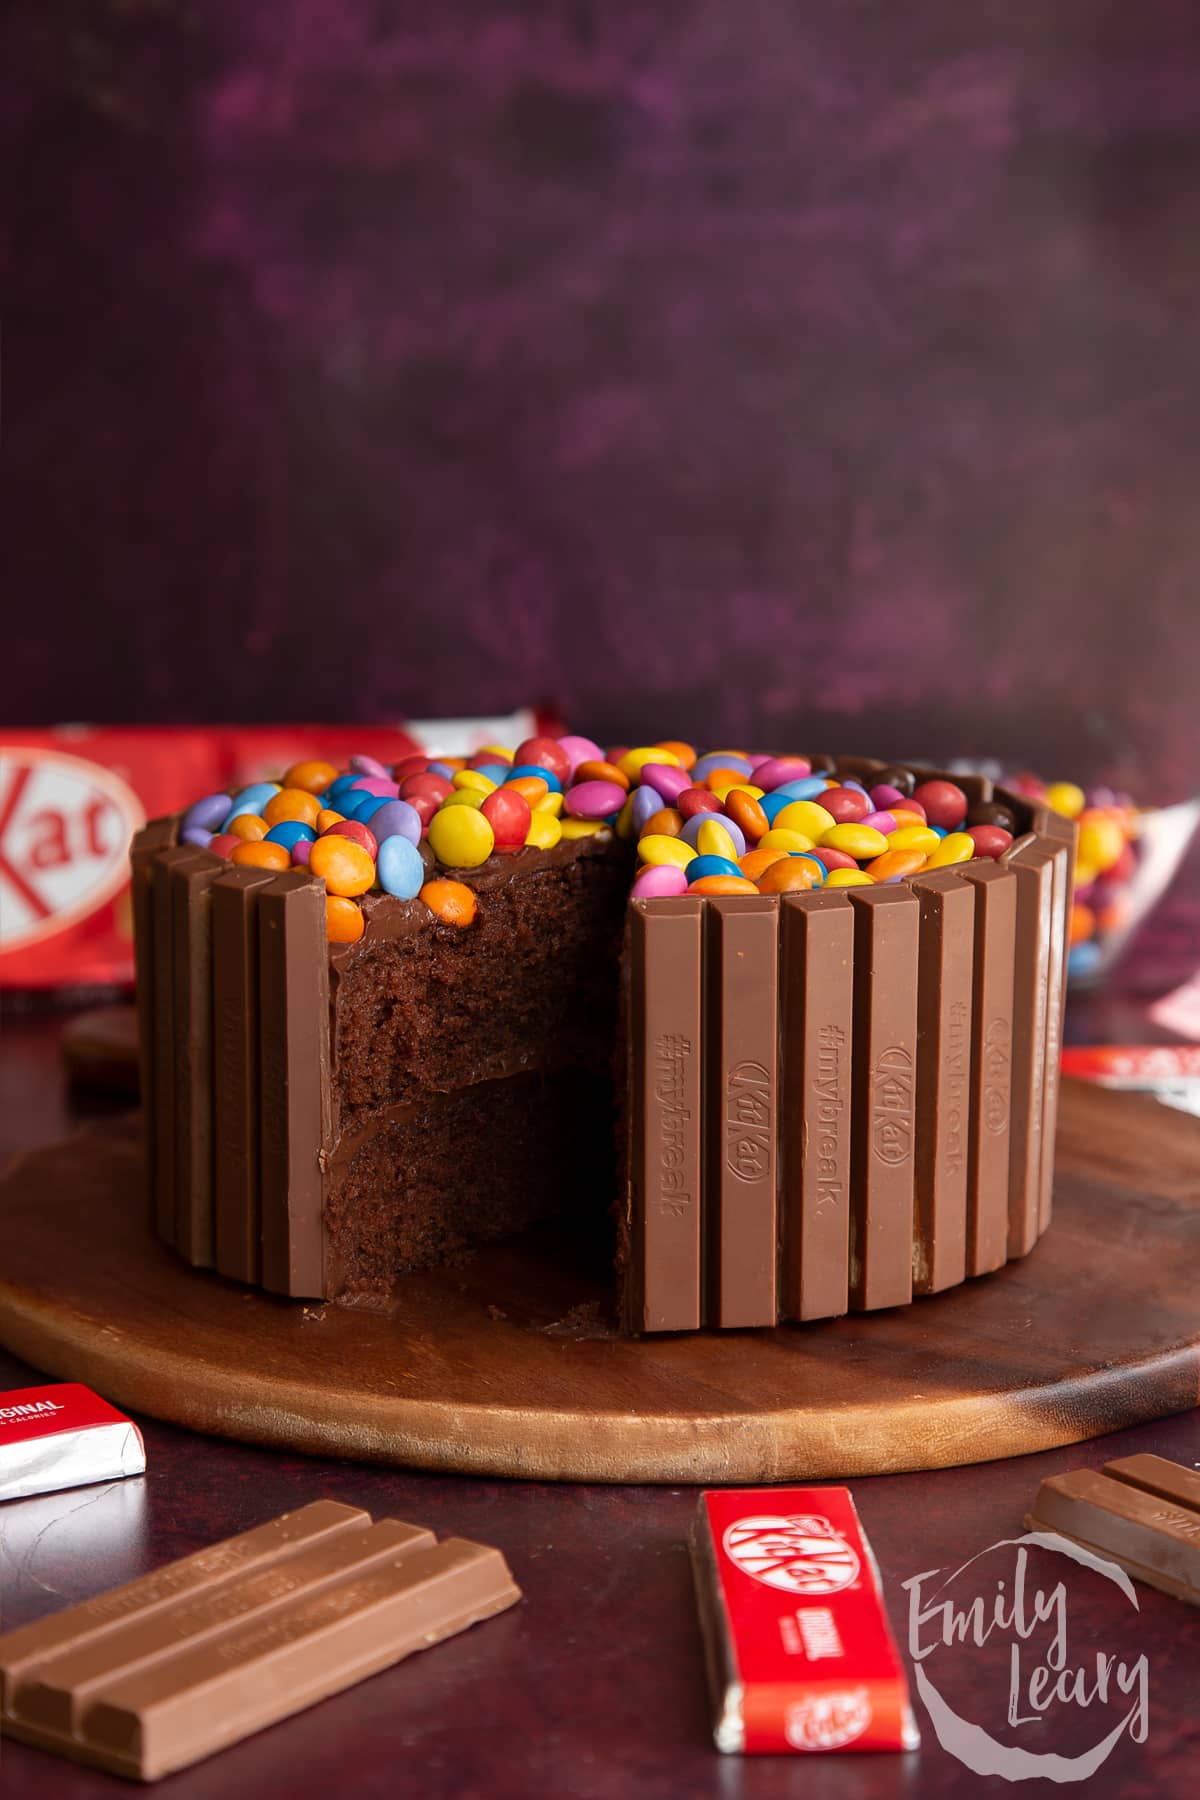 Order colourful KitKat cake for birthdays | Gurgaon Bakers